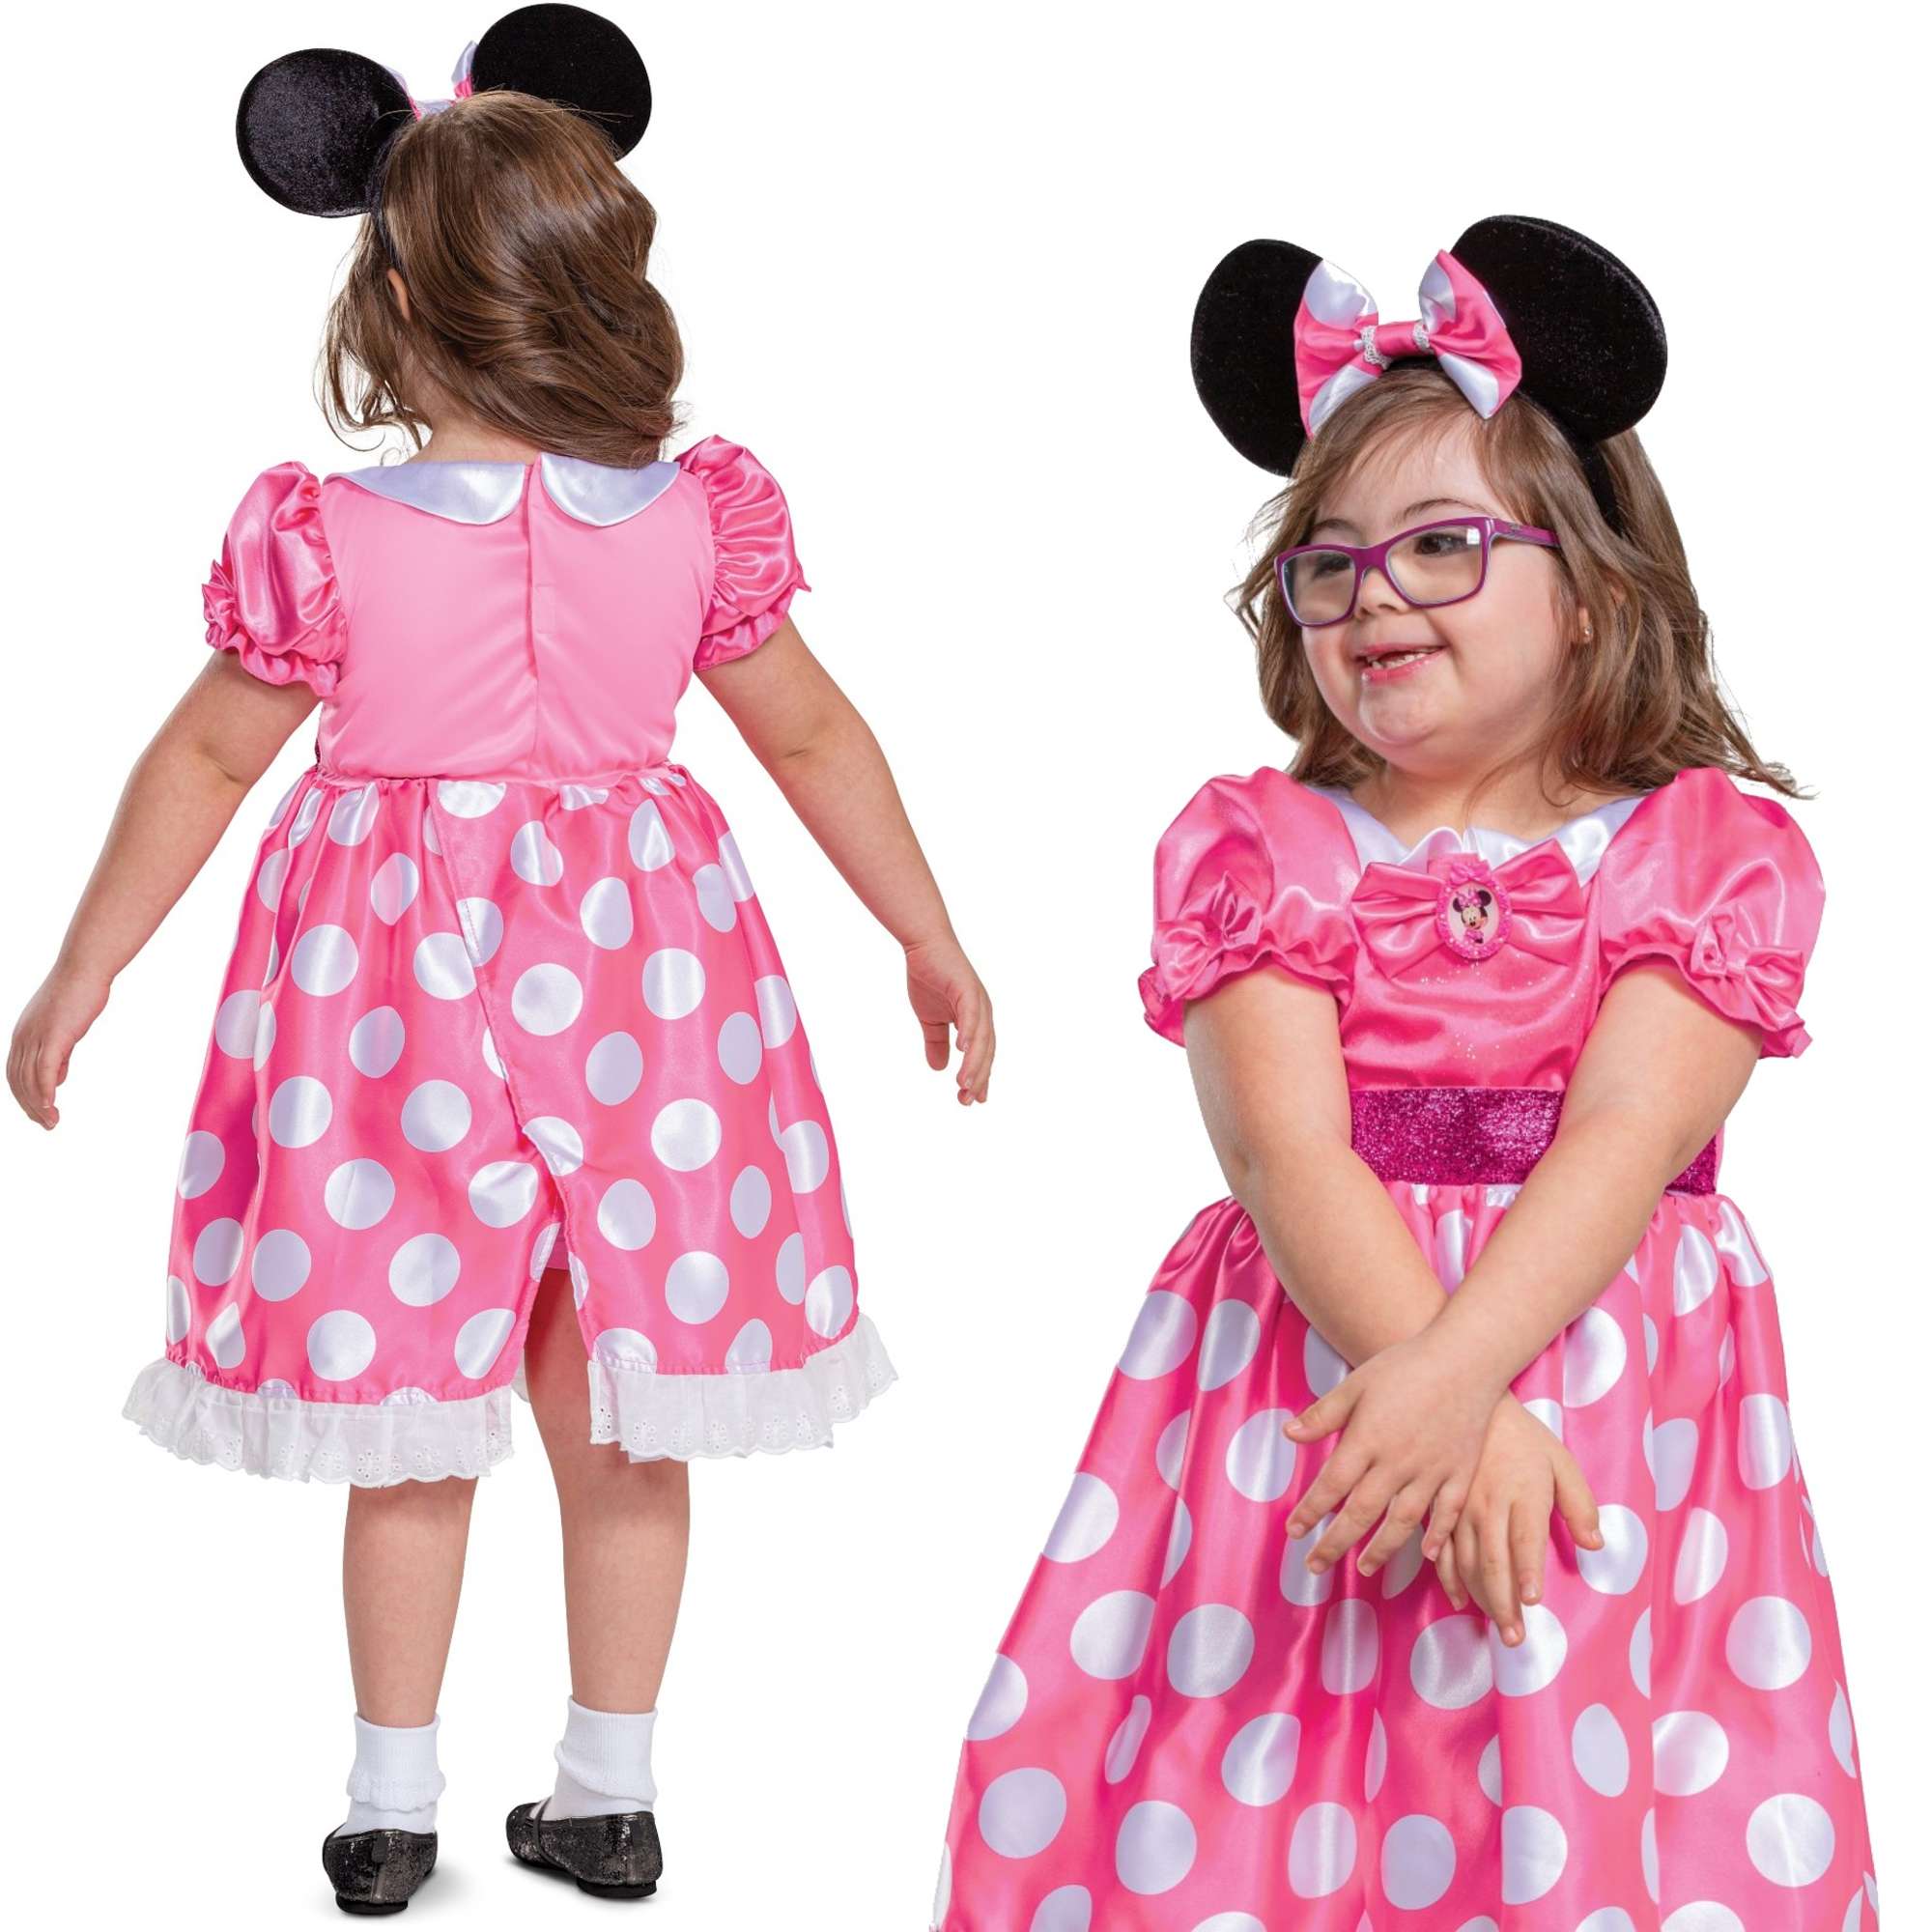 Strj karnawaowy Disney Myszka Minnie dostosowany do dzieci z niepenosprawnoci 110-122 cm (5-6 lat)